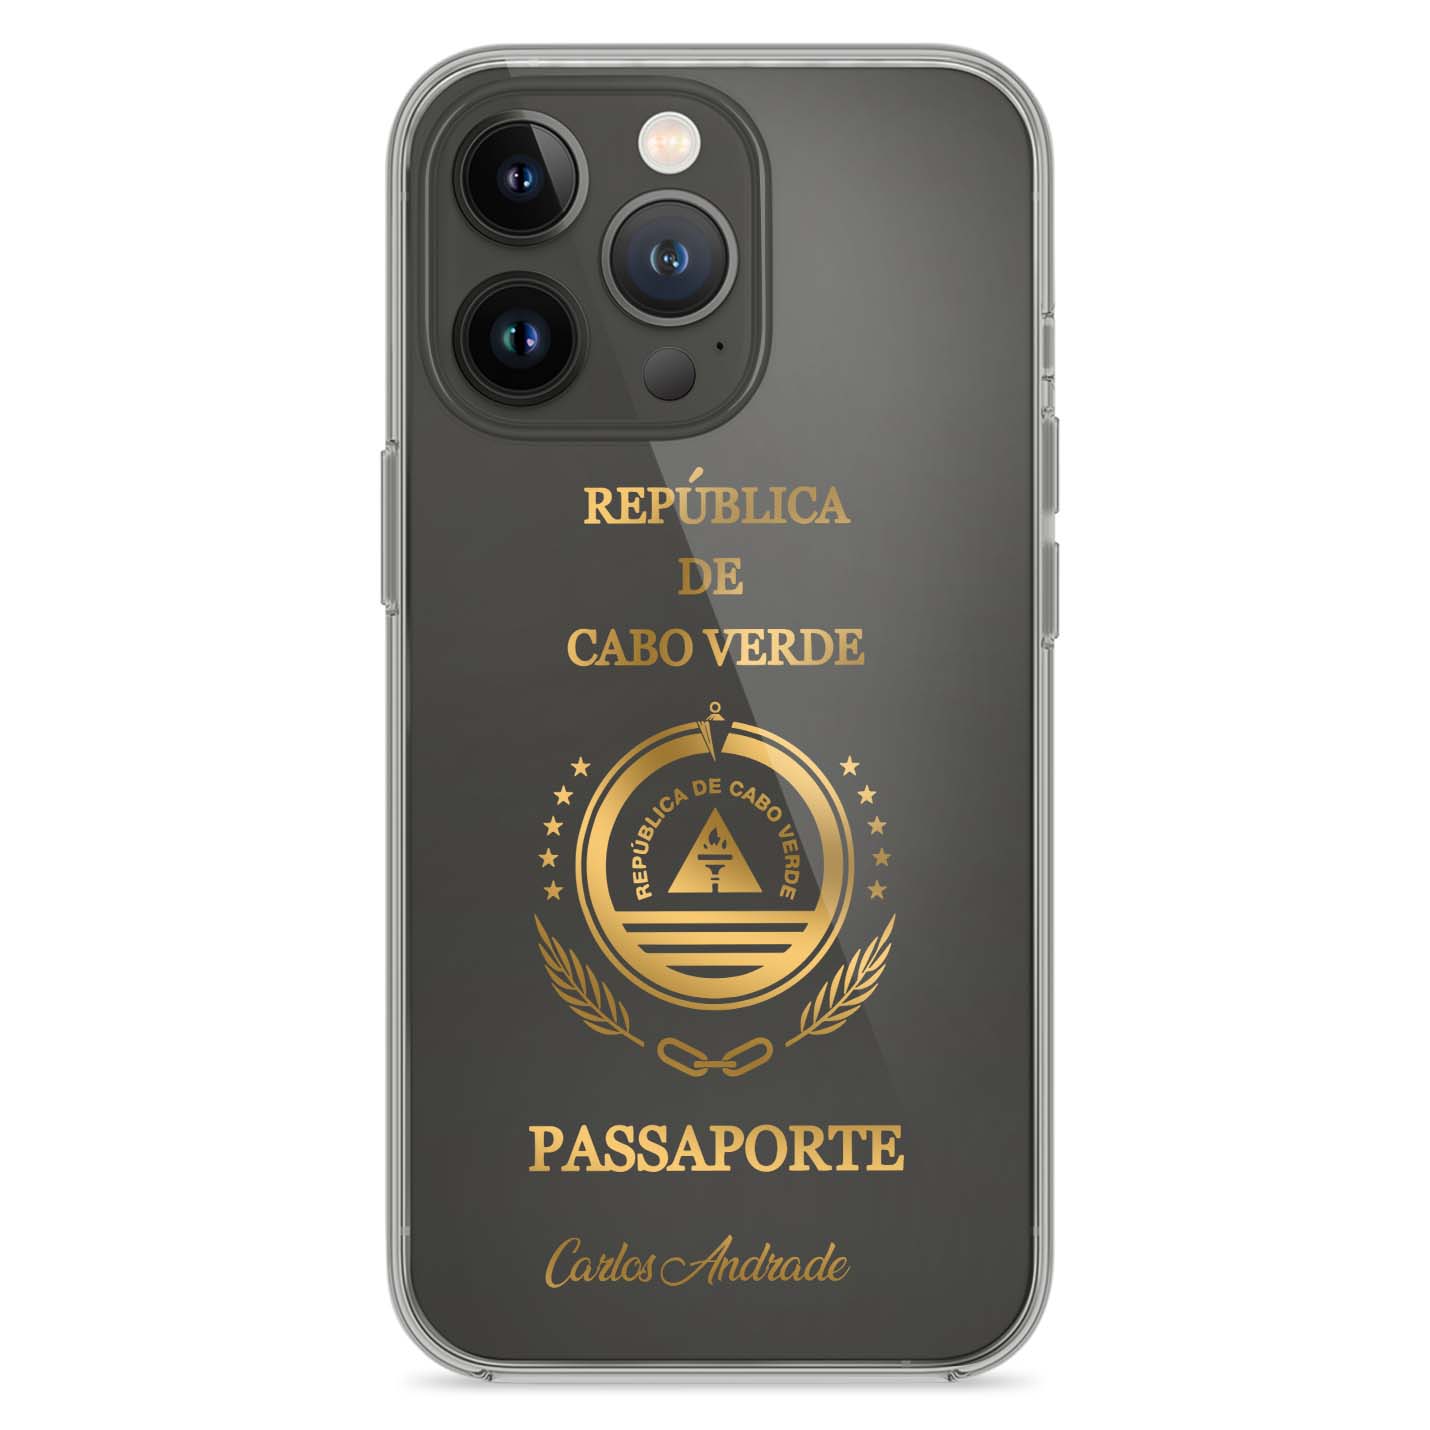 Handyhüllen mit Reisepass - Kap Verde - 1instaphone